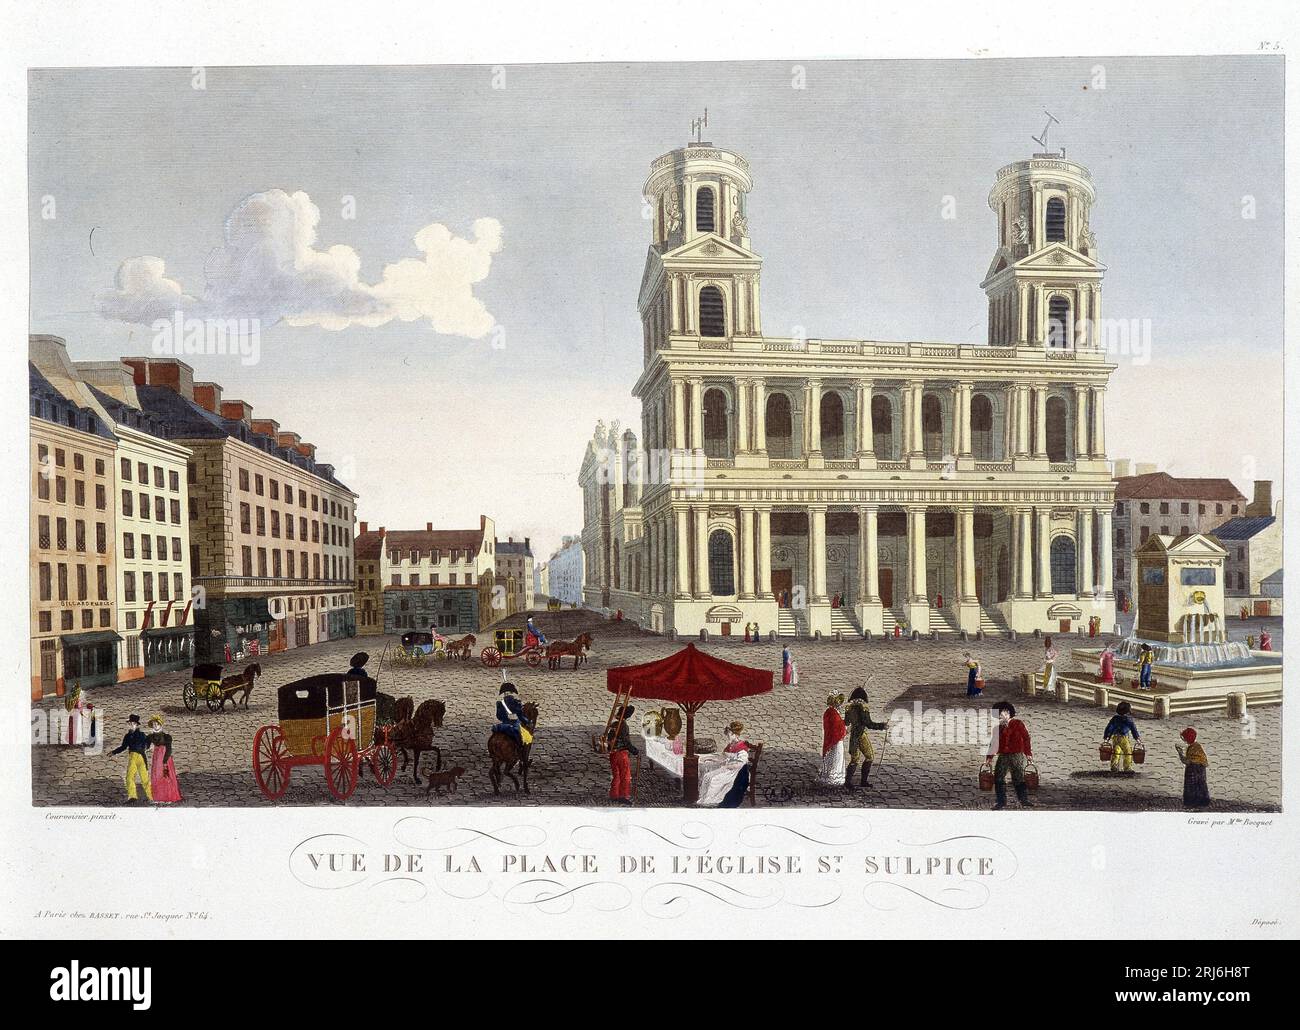 Vue de la Place de l'Eglise St Sulpice - dans 'Vues de Paris' par Courvoisier, 1827 Banque D'Images